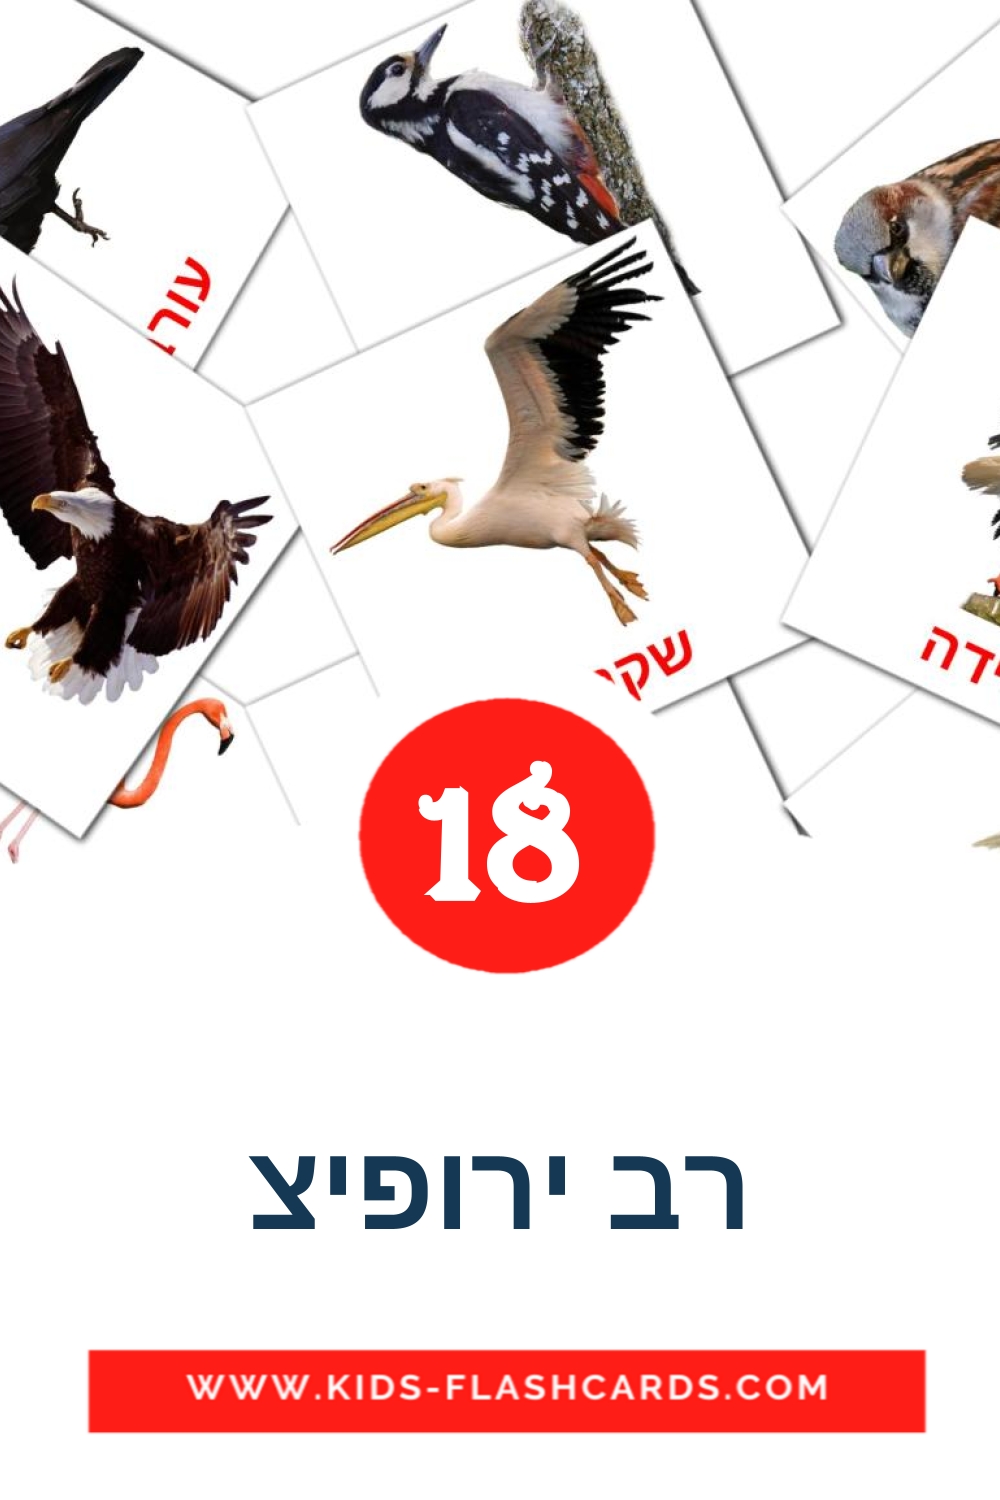 18 Cartões com Imagens de רב ירופיצ para Jardim de Infância em hebraico